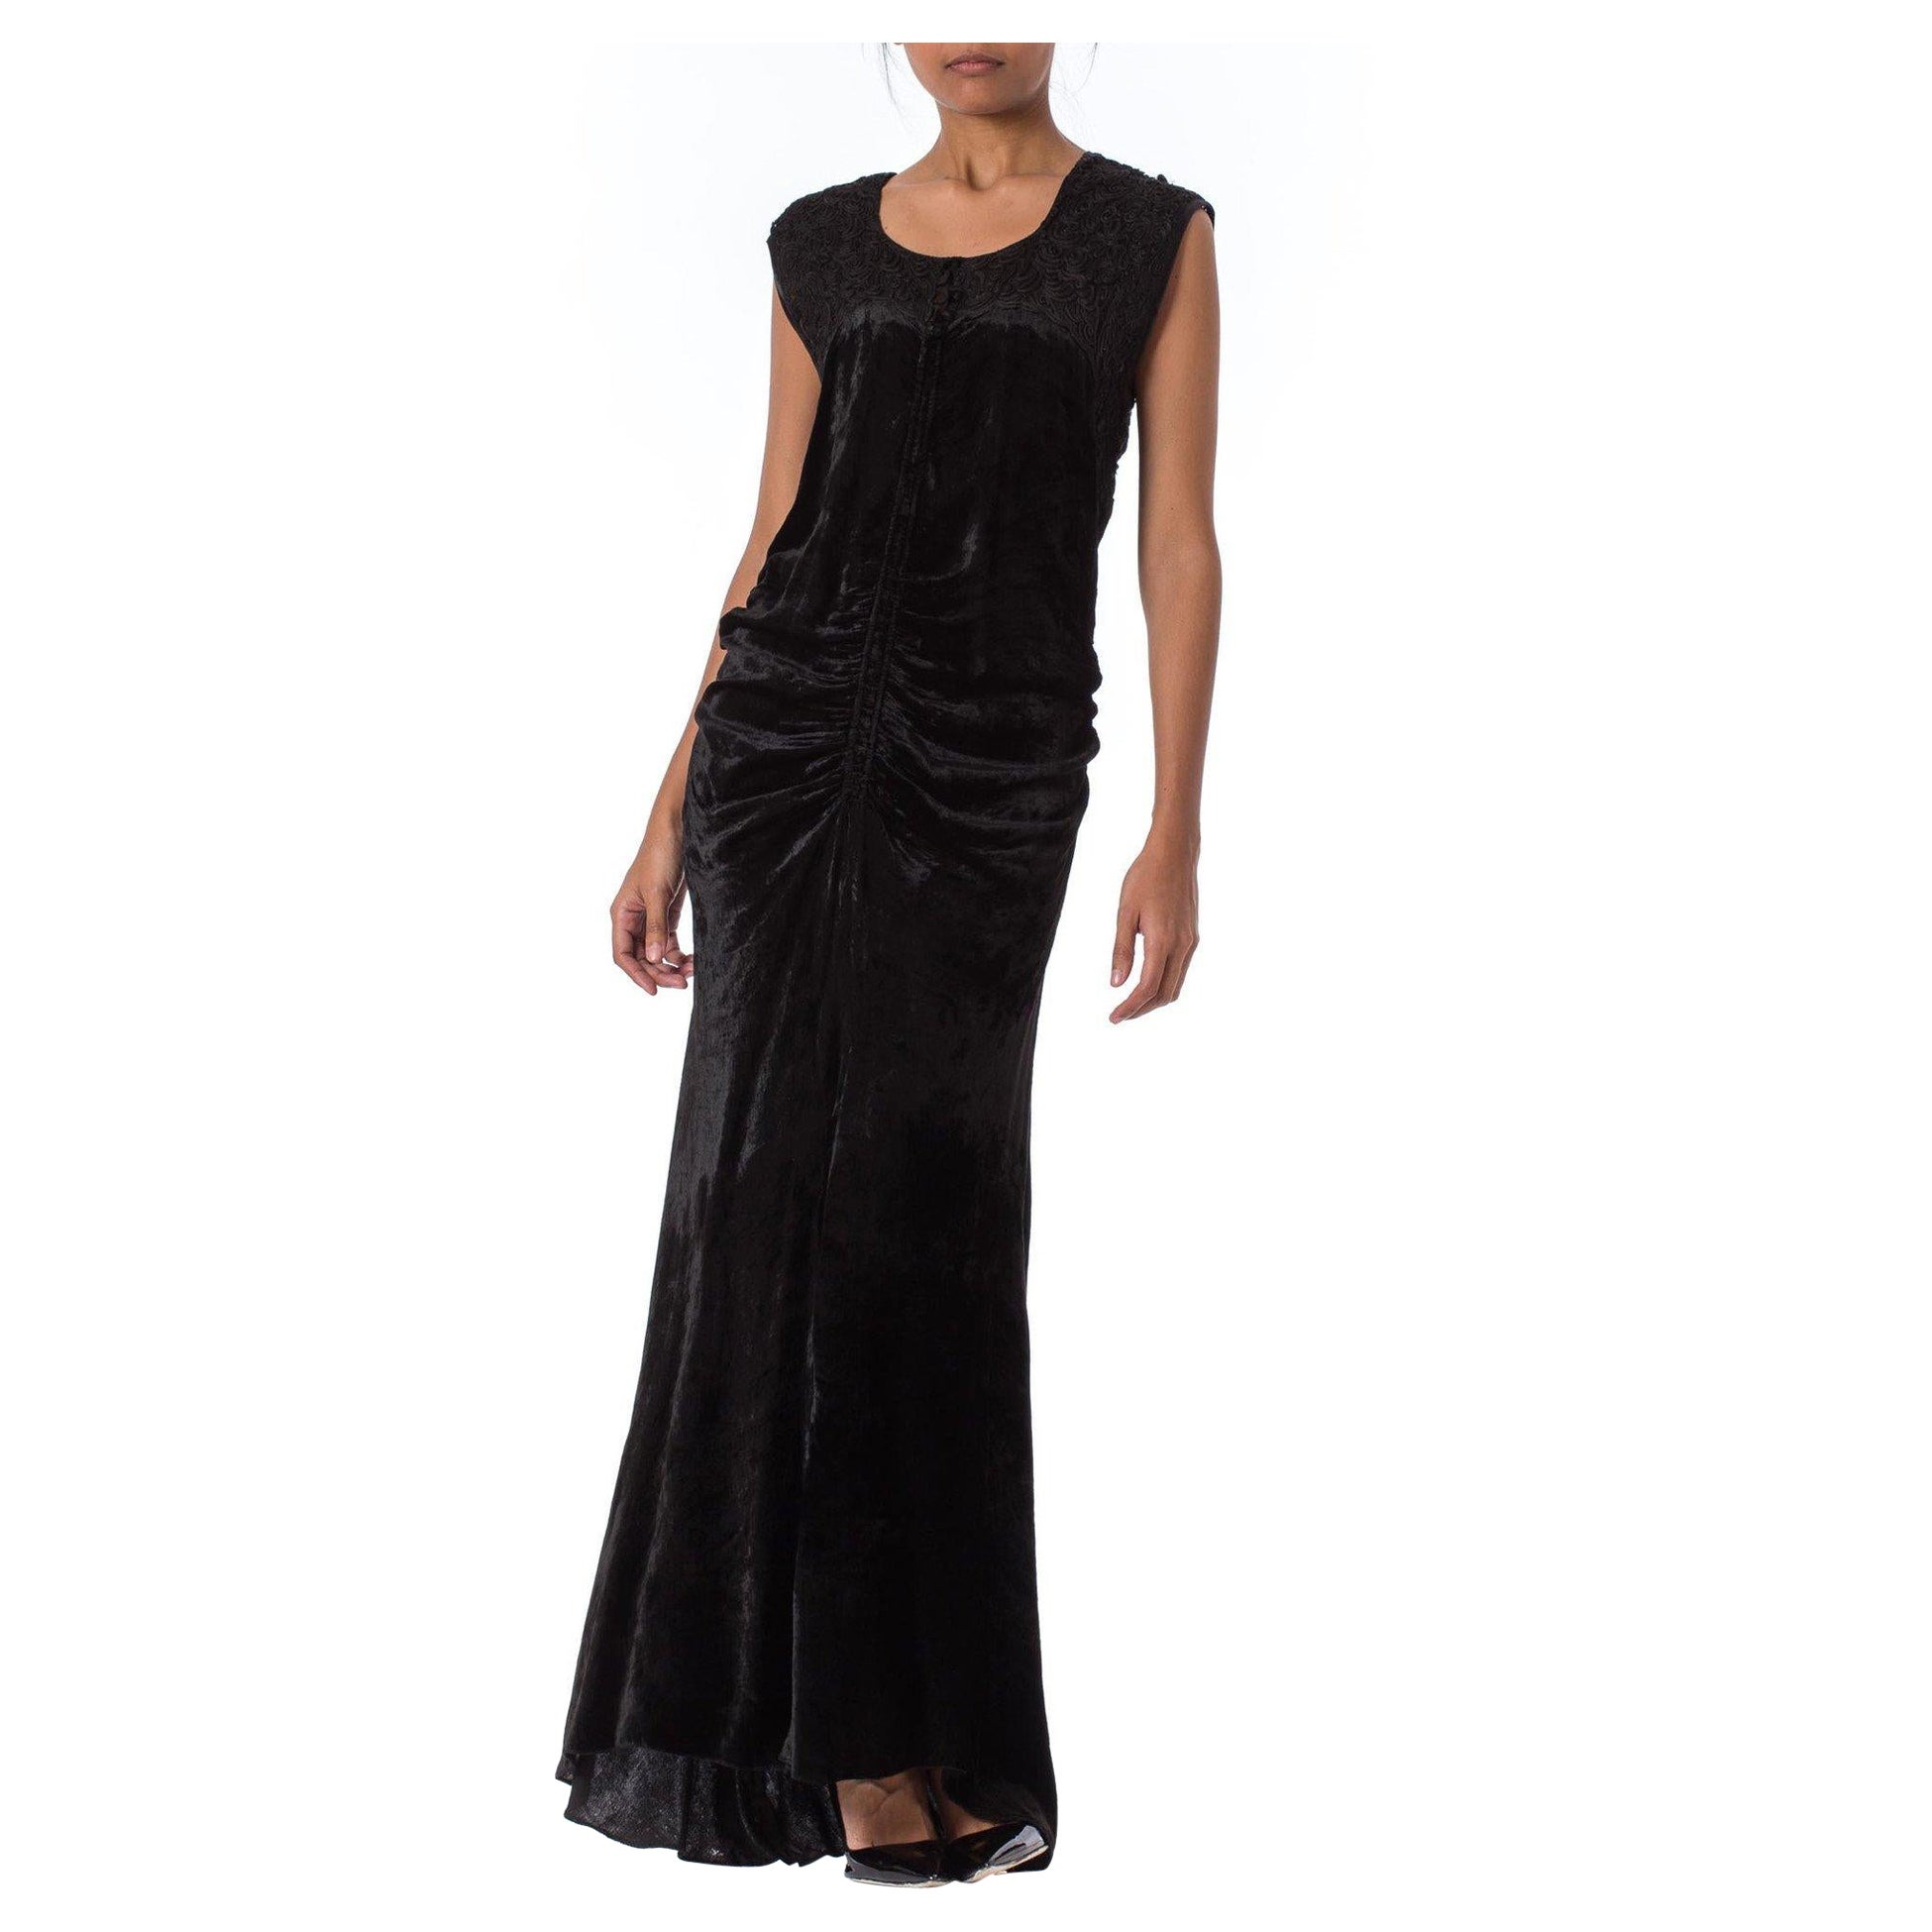 Schwarzes Seidensamt-Kleid aus den 1930er Jahren mit Schrägschnitt, leichter Schleppe und besticktem Spitzenmieder im Angebot